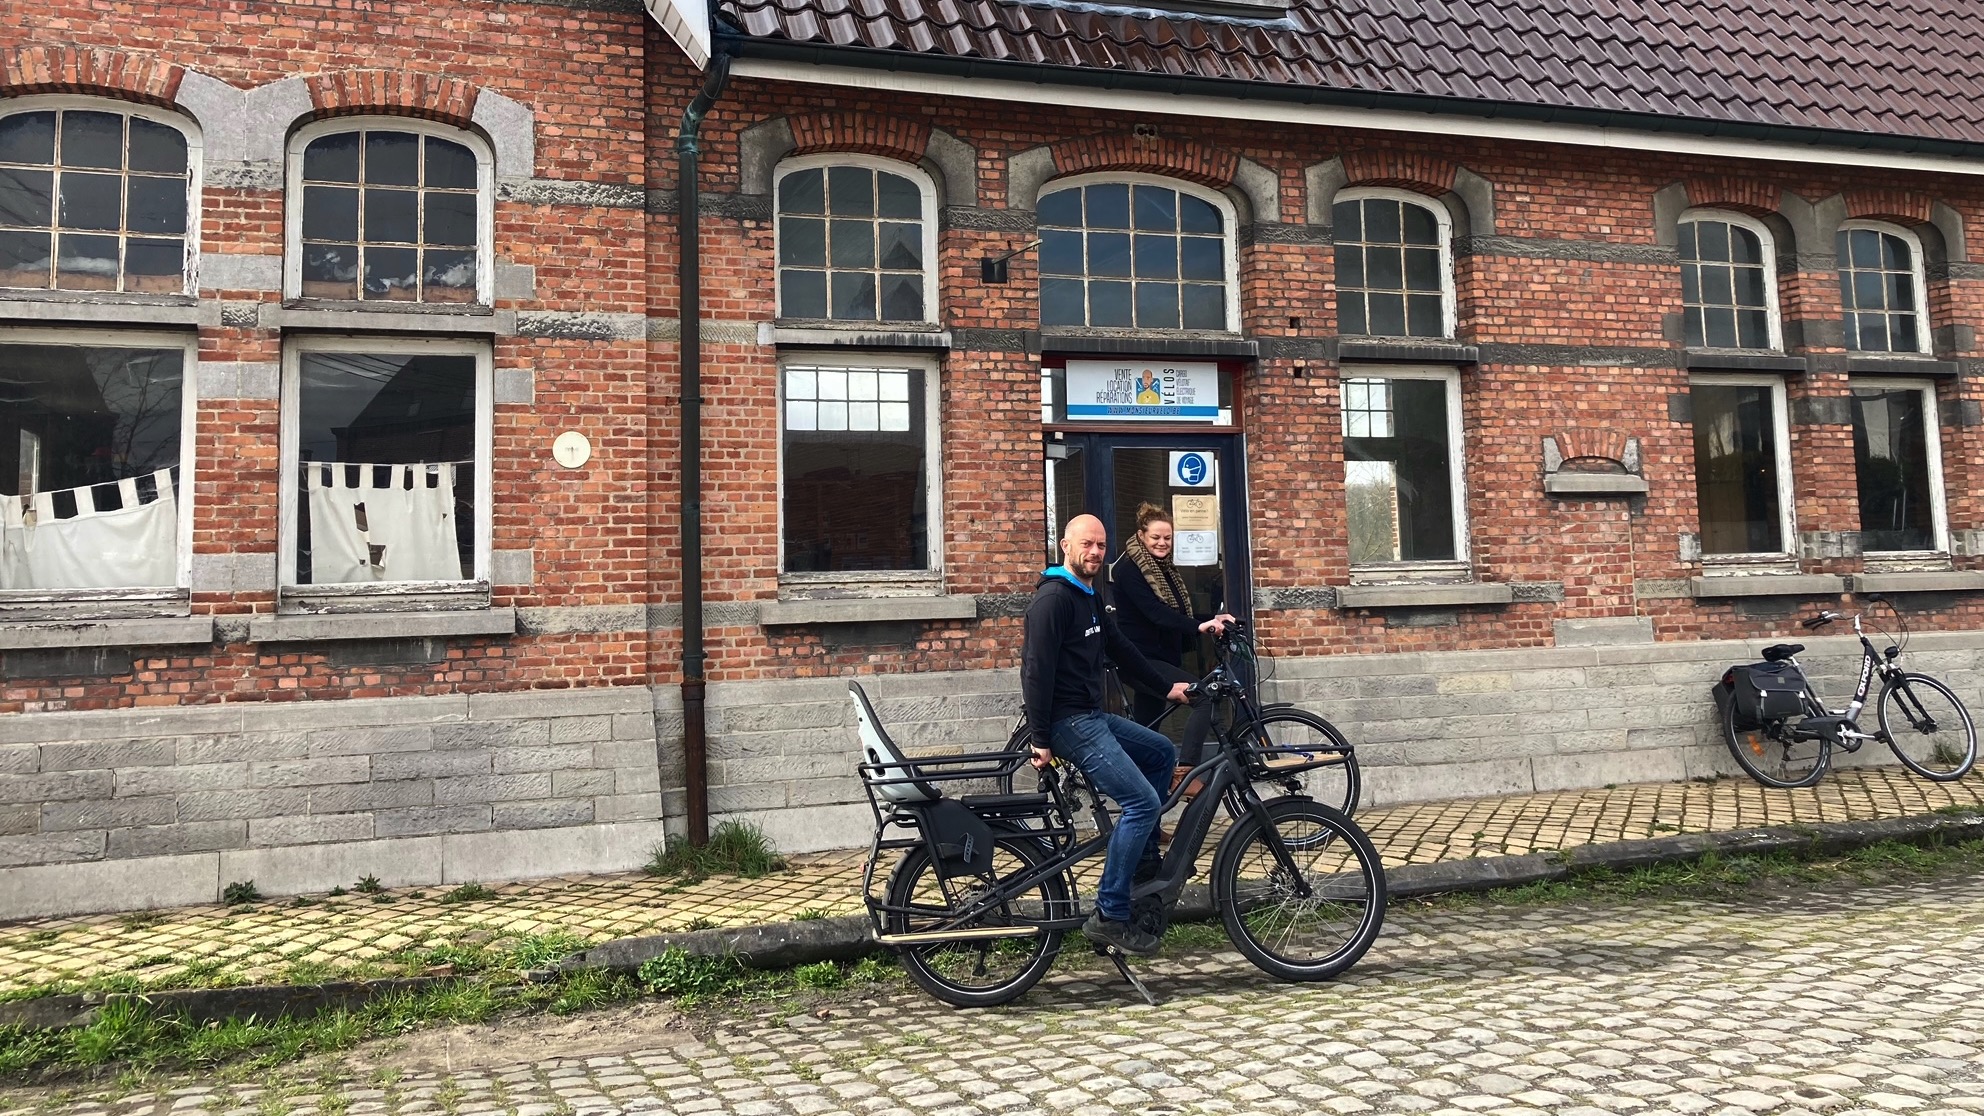 Brunehaut met des vélos électriques à disposition de ses citoyens